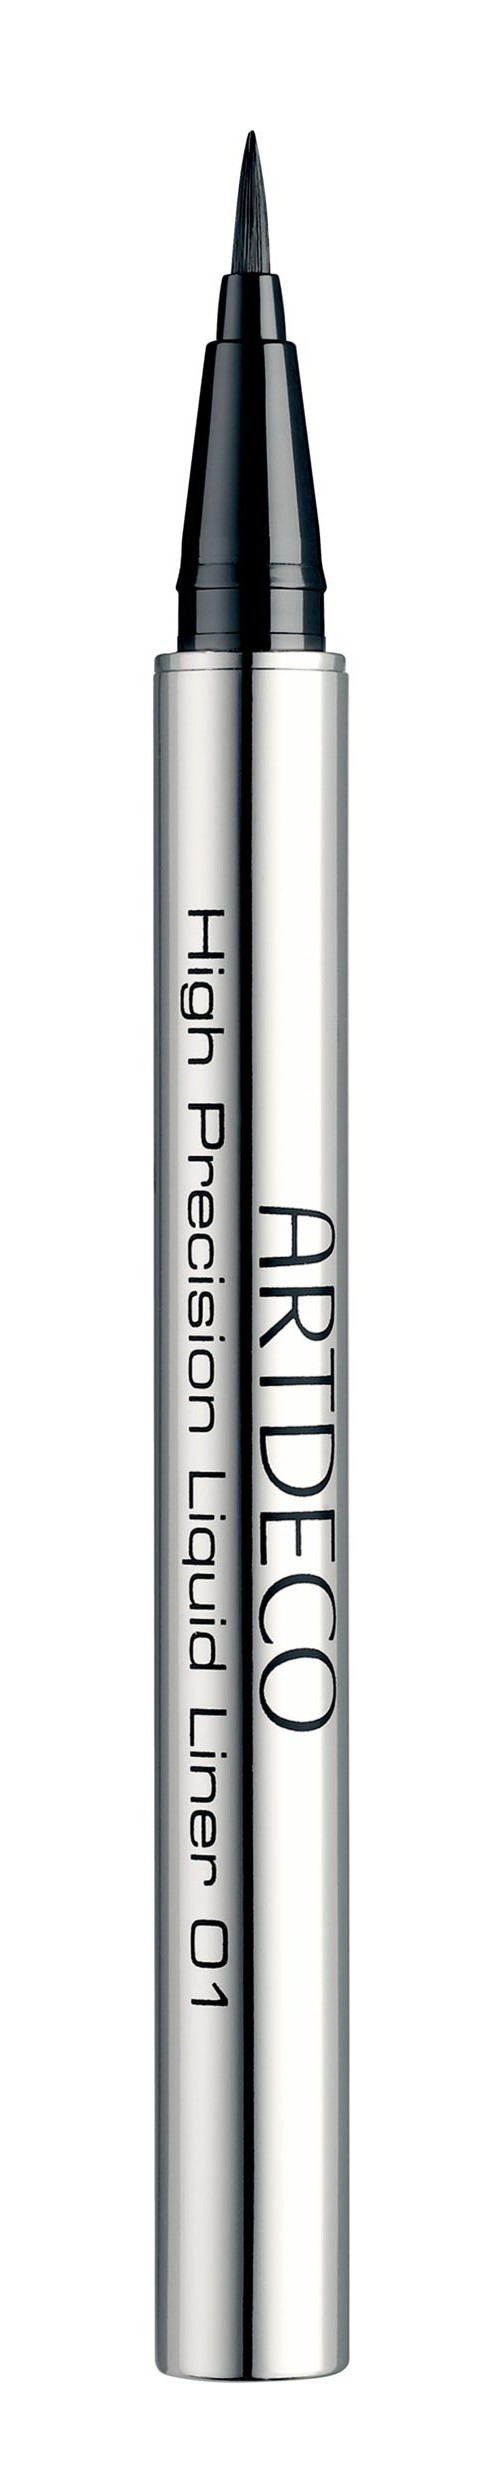 Artdeco High Precision Liquid Liner #01 black